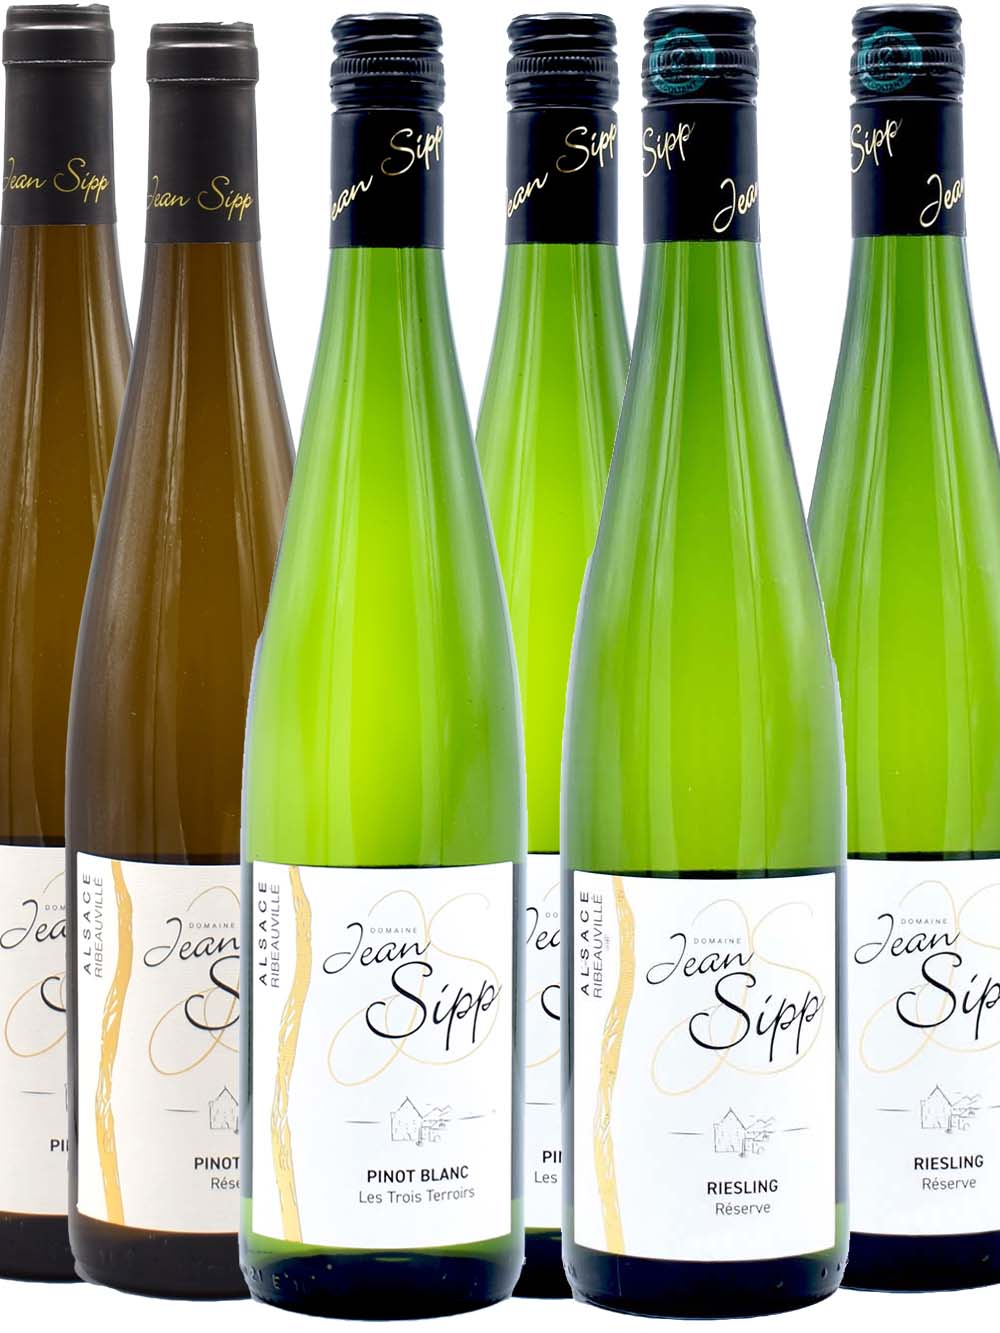 Ontdek de wijnen van Jean Sipp